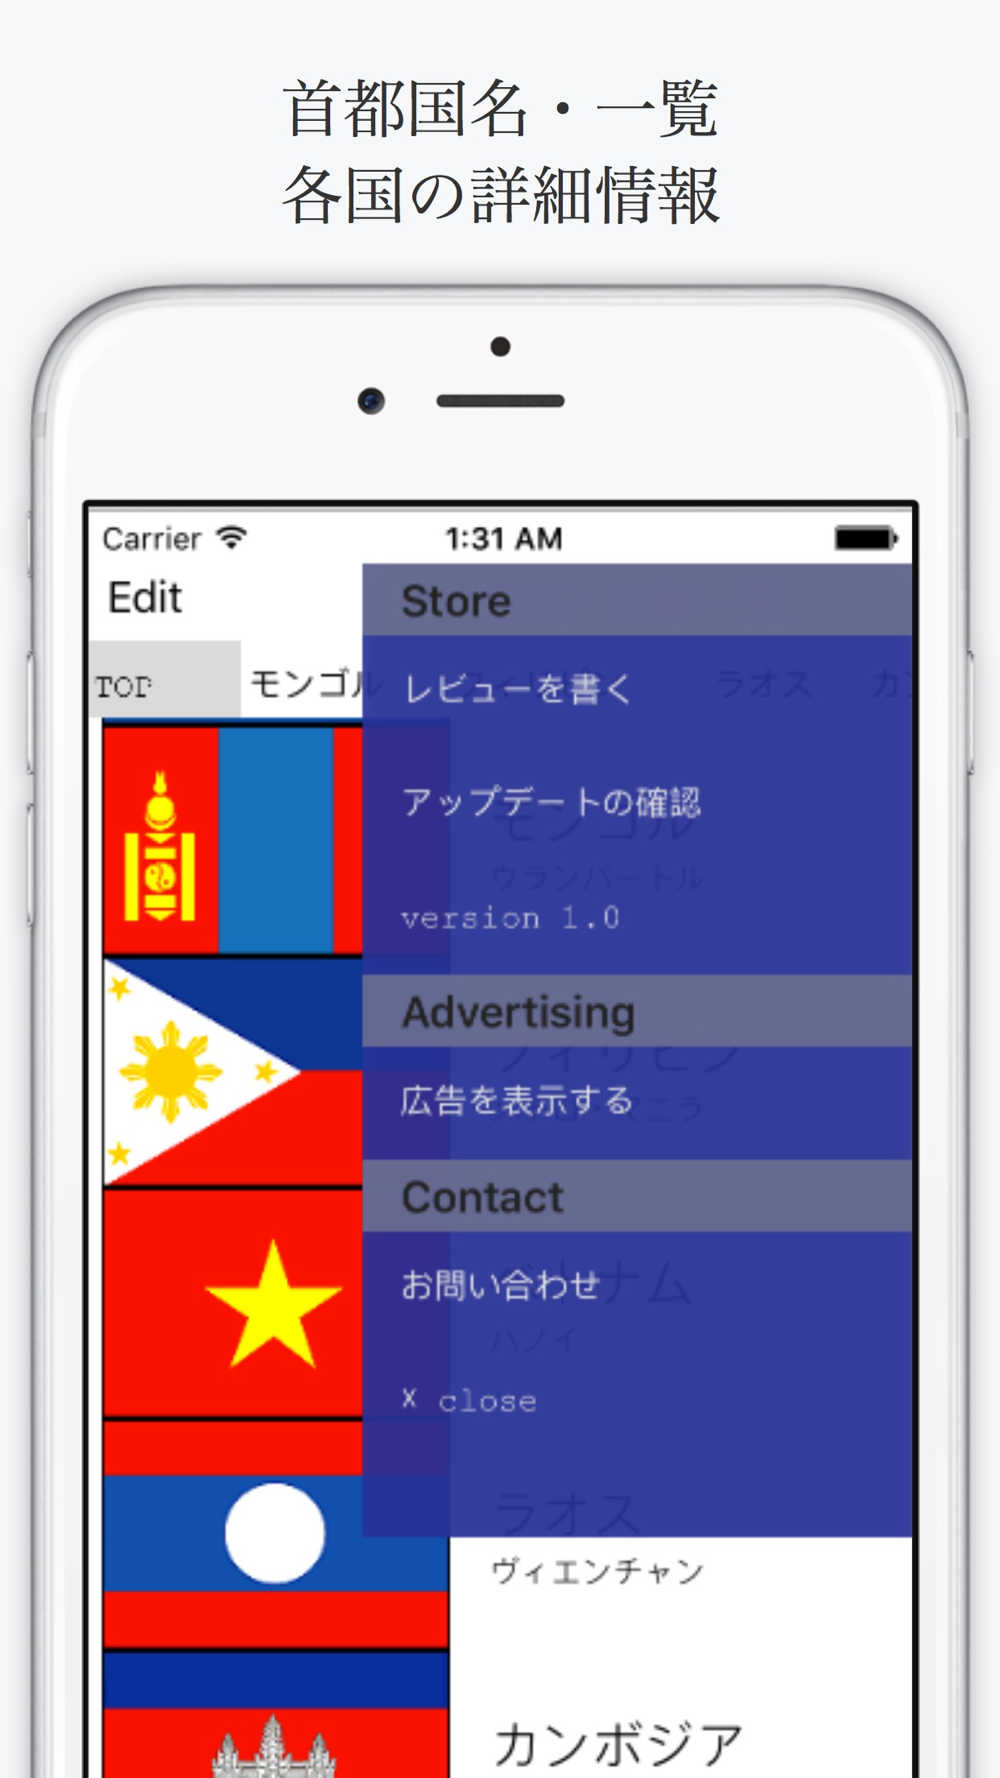 首都 国名一覧 世界地理はこのアプリで Free Download App For Iphone Steprimo Com